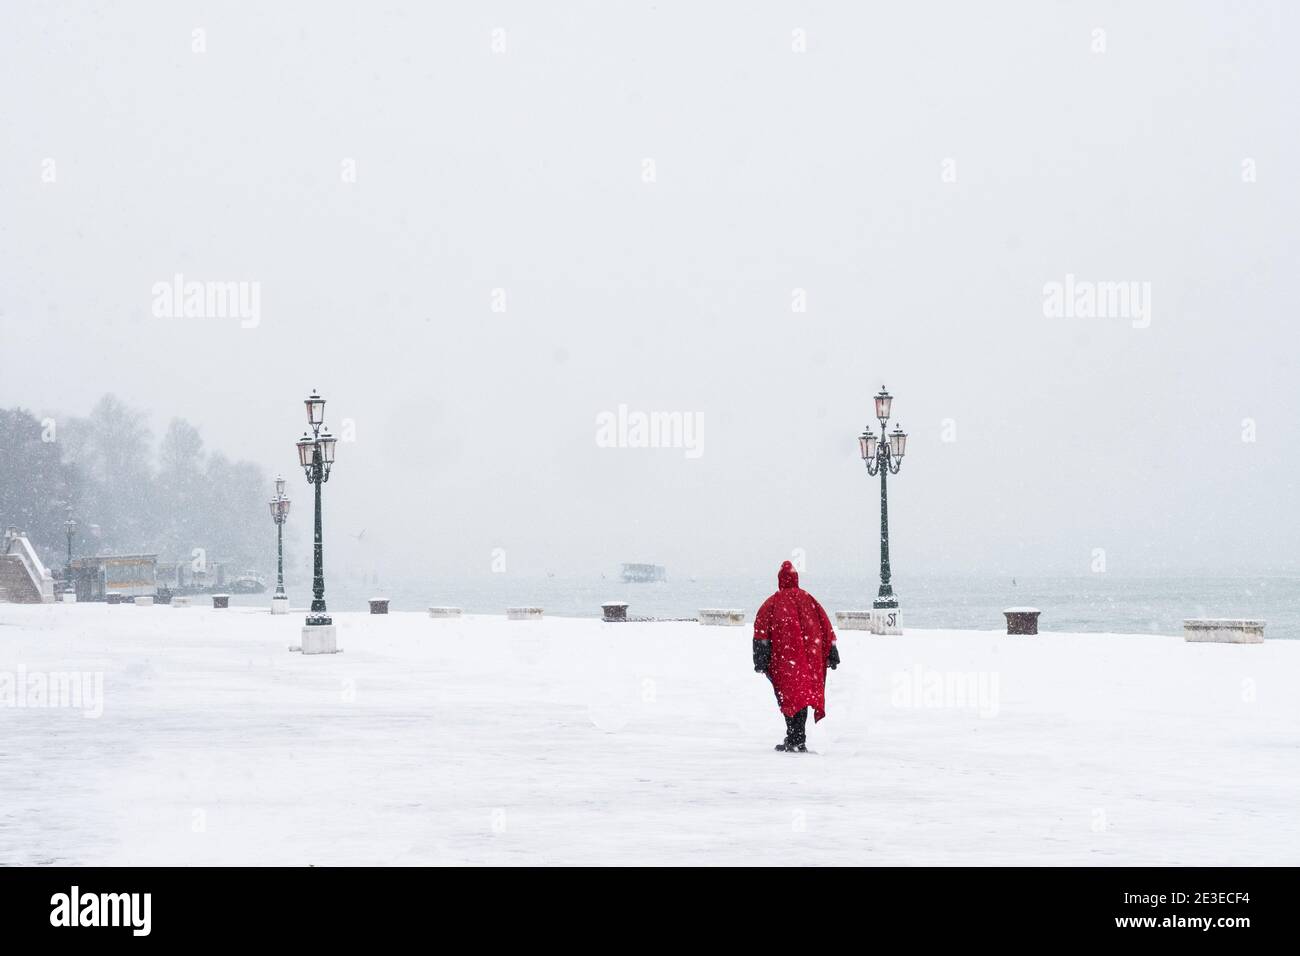 Venise - Riva dei Sette Martiri. Donna à mantello rosso cammina sotto la neve. Venise - une femme marche sous la tempête de neige sur la Riva dei Sette Martir Banque D'Images